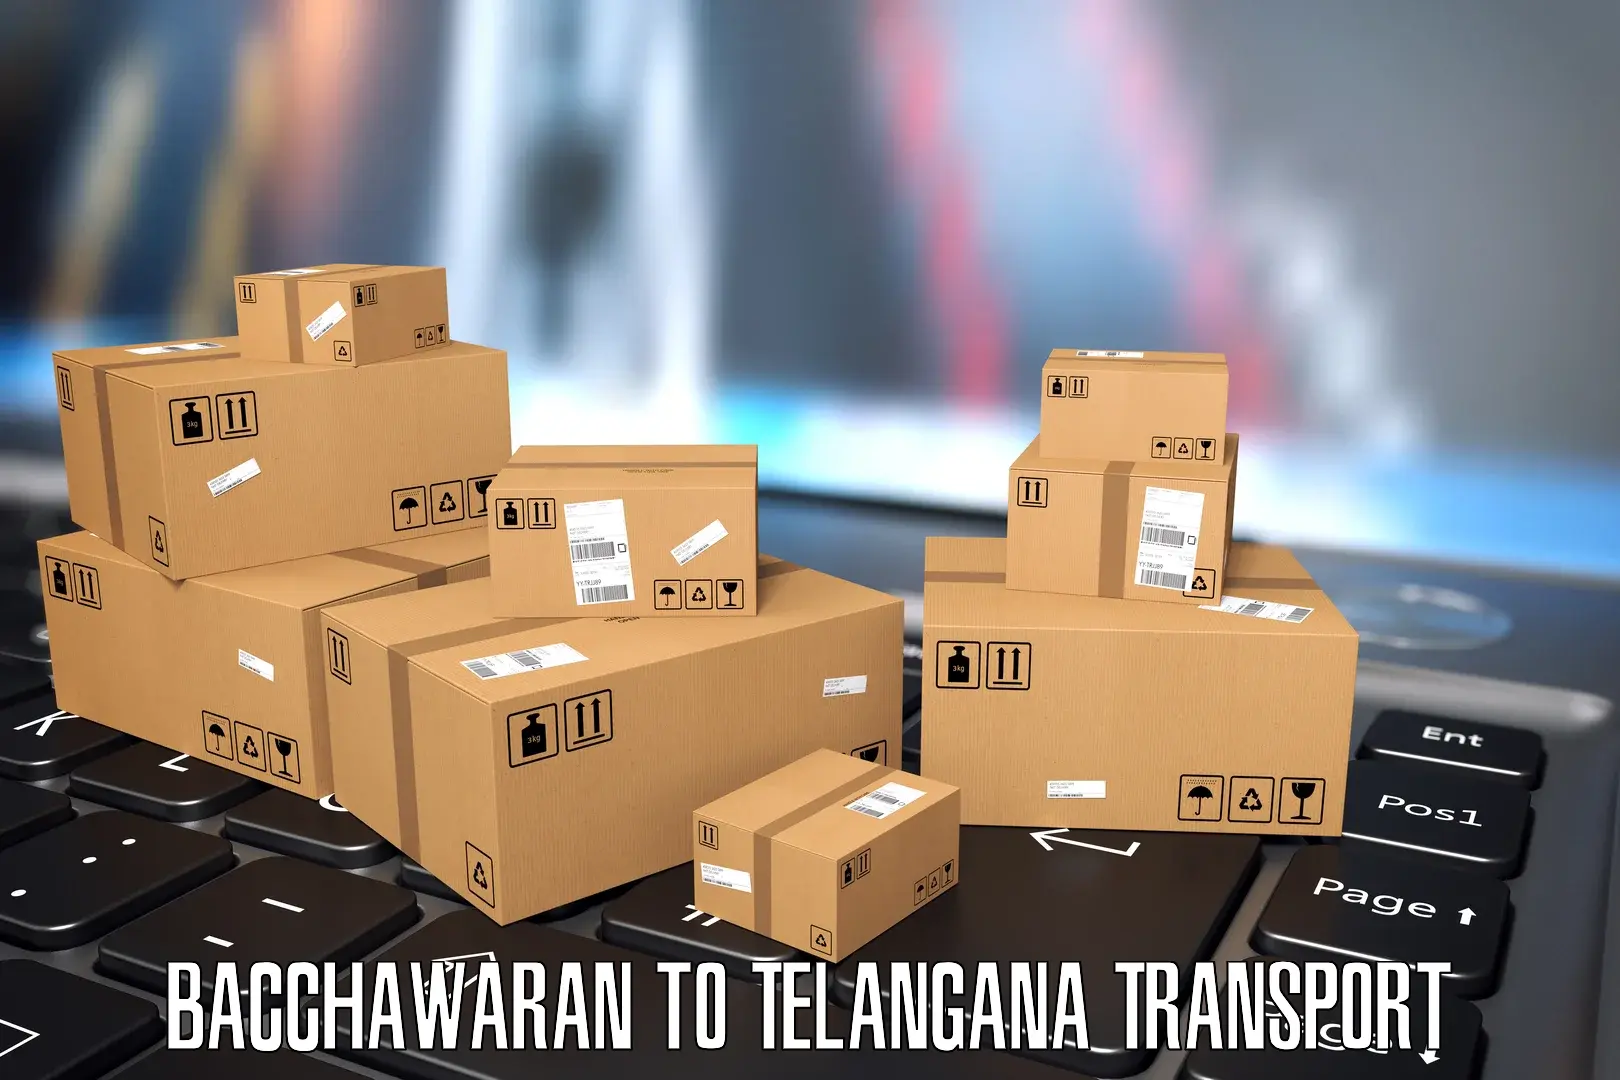 Furniture transport service in Bacchawaran to Warangal